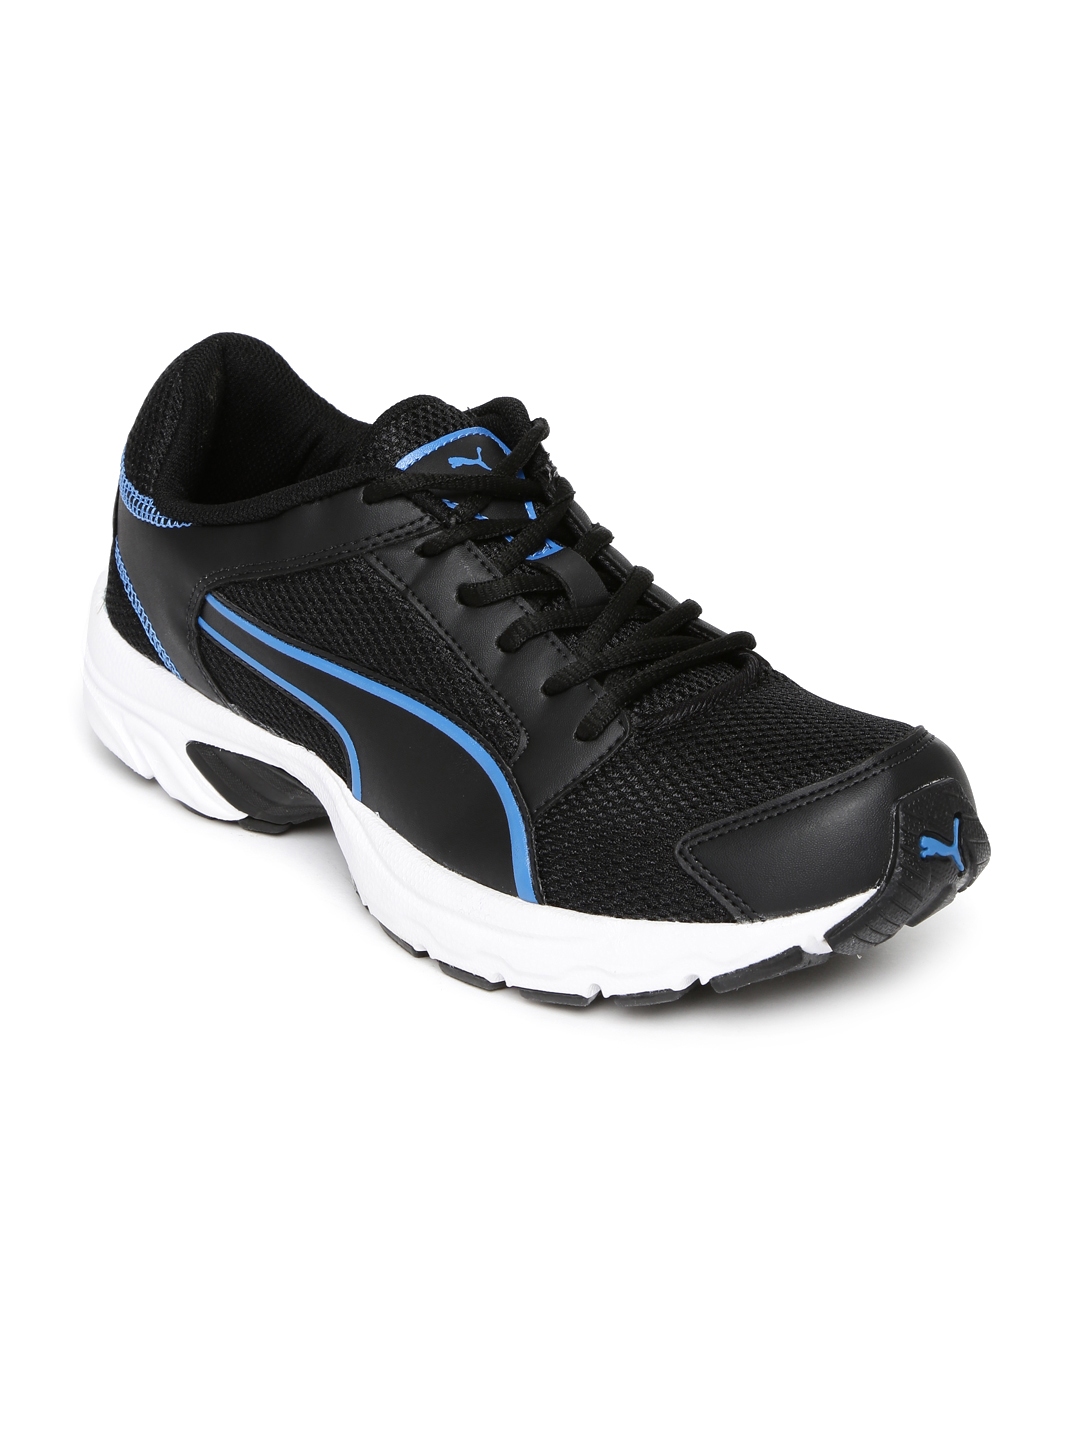 Buy PUMA Men Black Splendor DP Sneakers - Casual Shoes for Men 1434915 ...